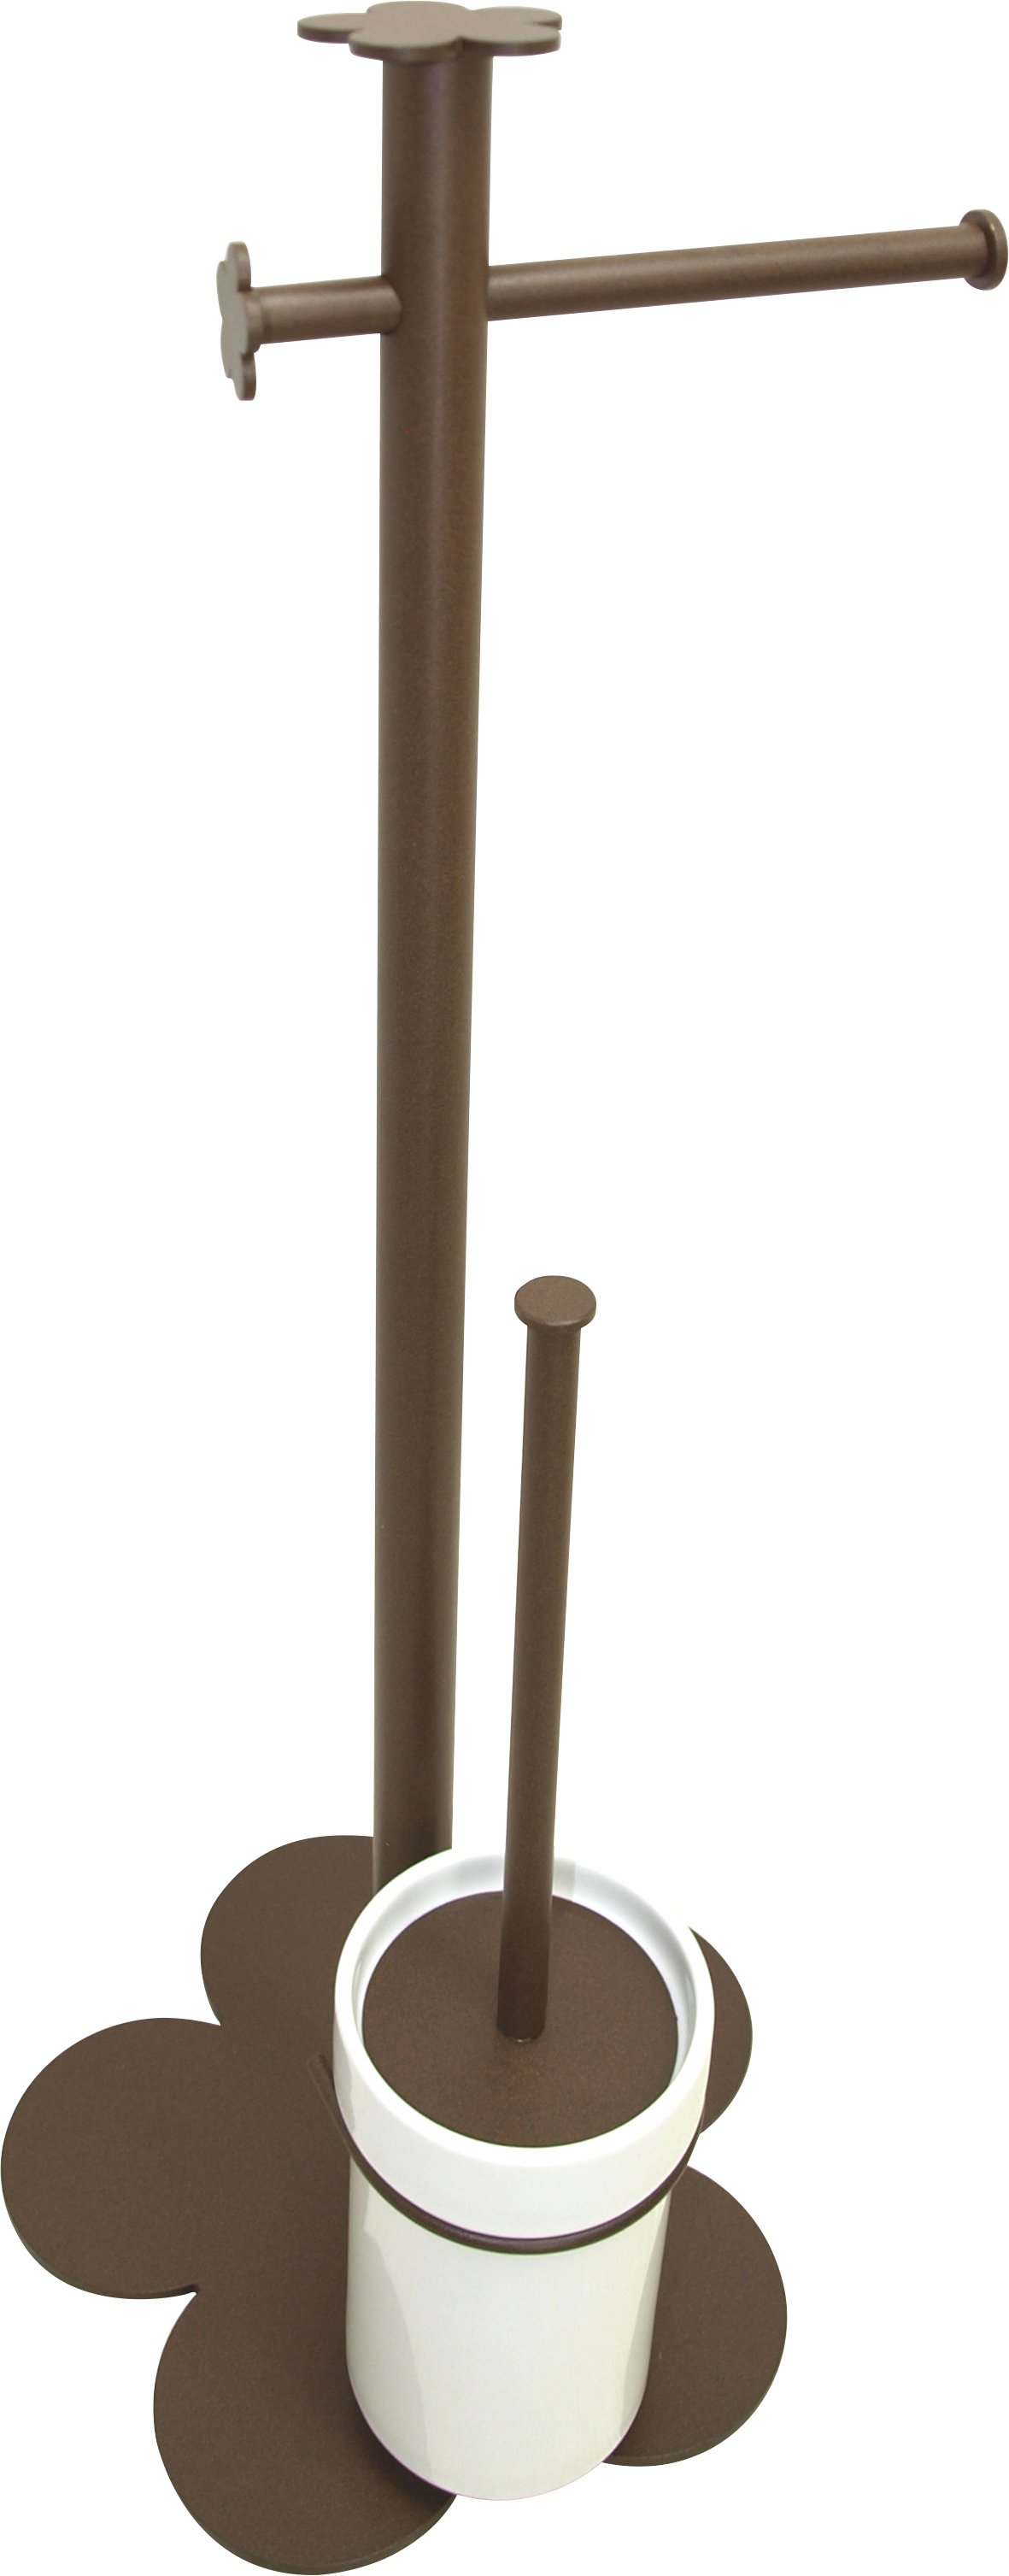 Escobillero y portarrollo provenza marrón 29x62 cm